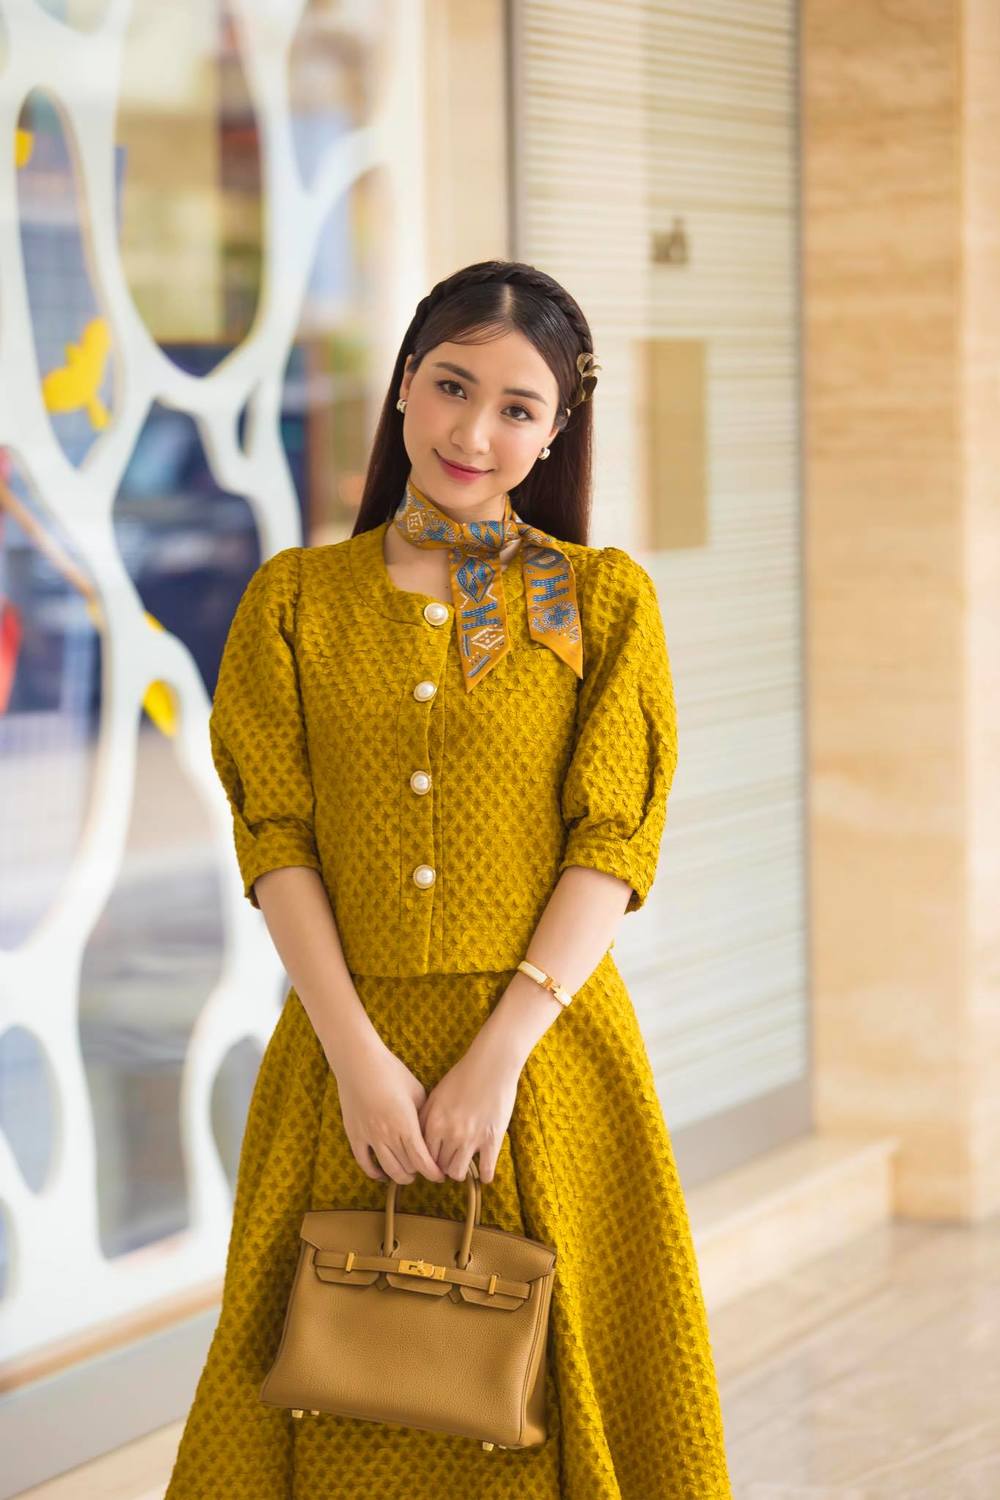  
Hòa Minzy đeo túi hiệu 400 triệu tông vàng với bộ cánh cổ điển đồng màu. (Ảnh: FBNV)